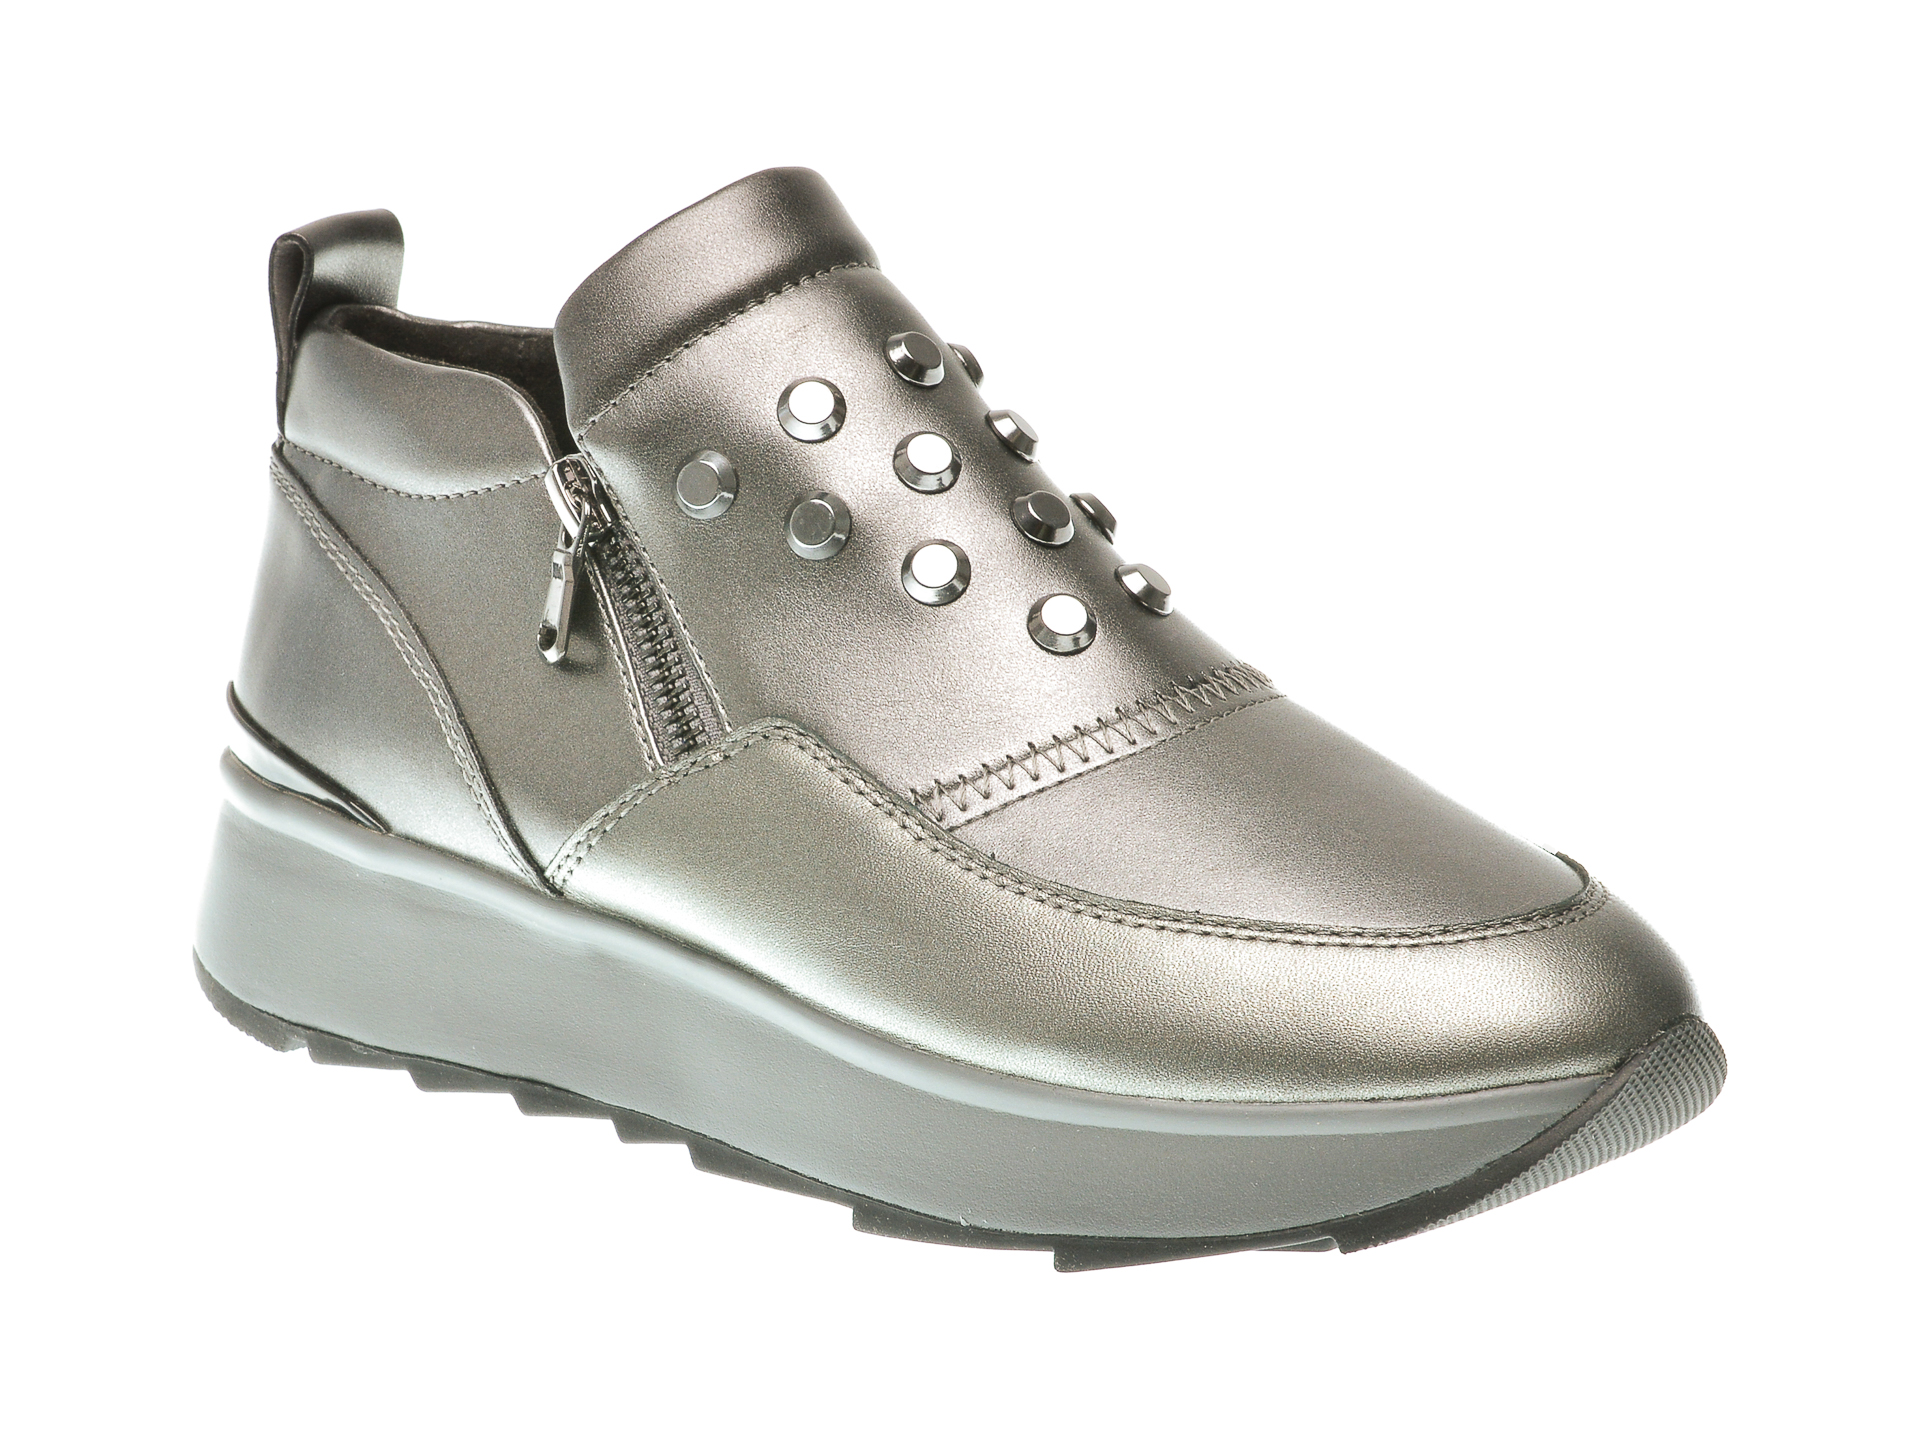 Pantofi GEOX gri, D745Ta, din piele ecologica